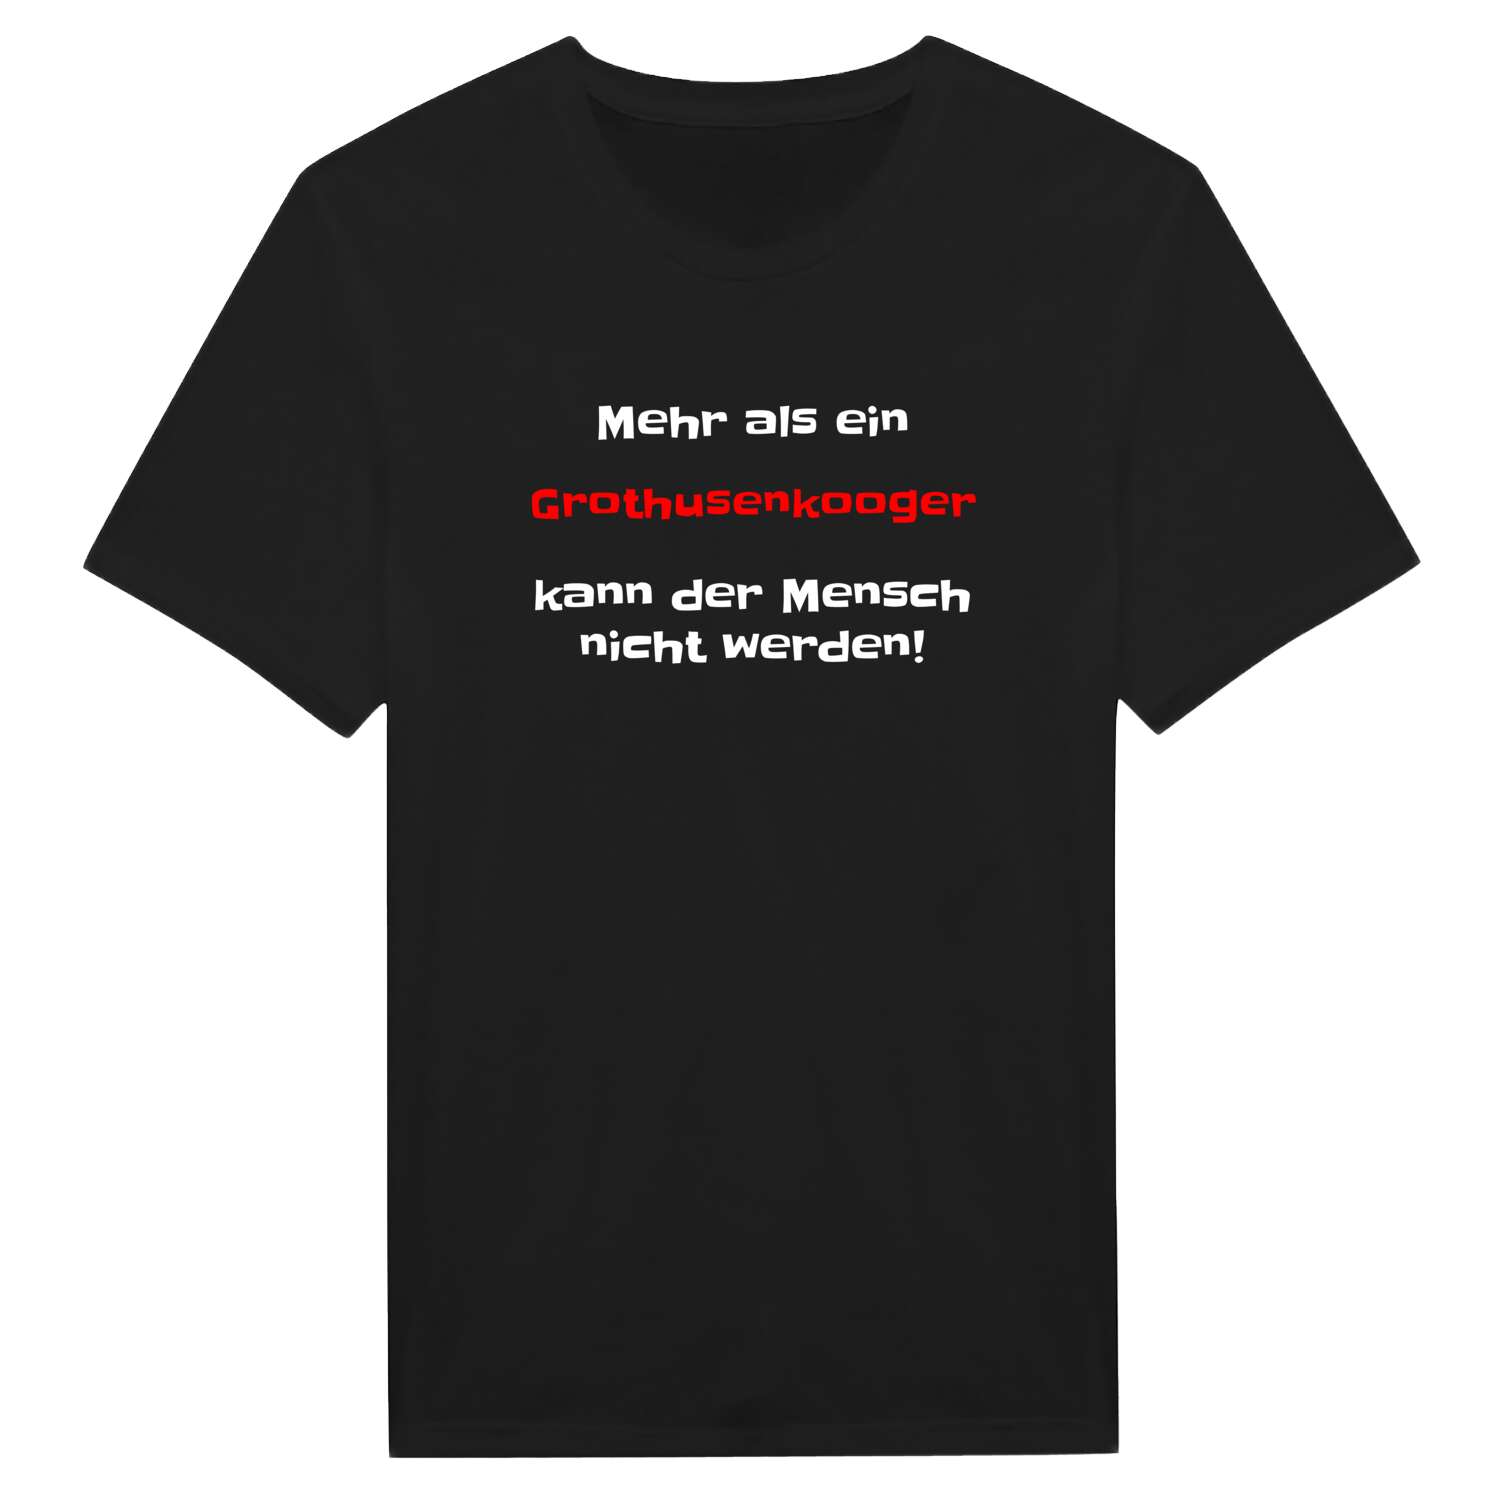 Grothusenkoog T-Shirt »Mehr als ein«